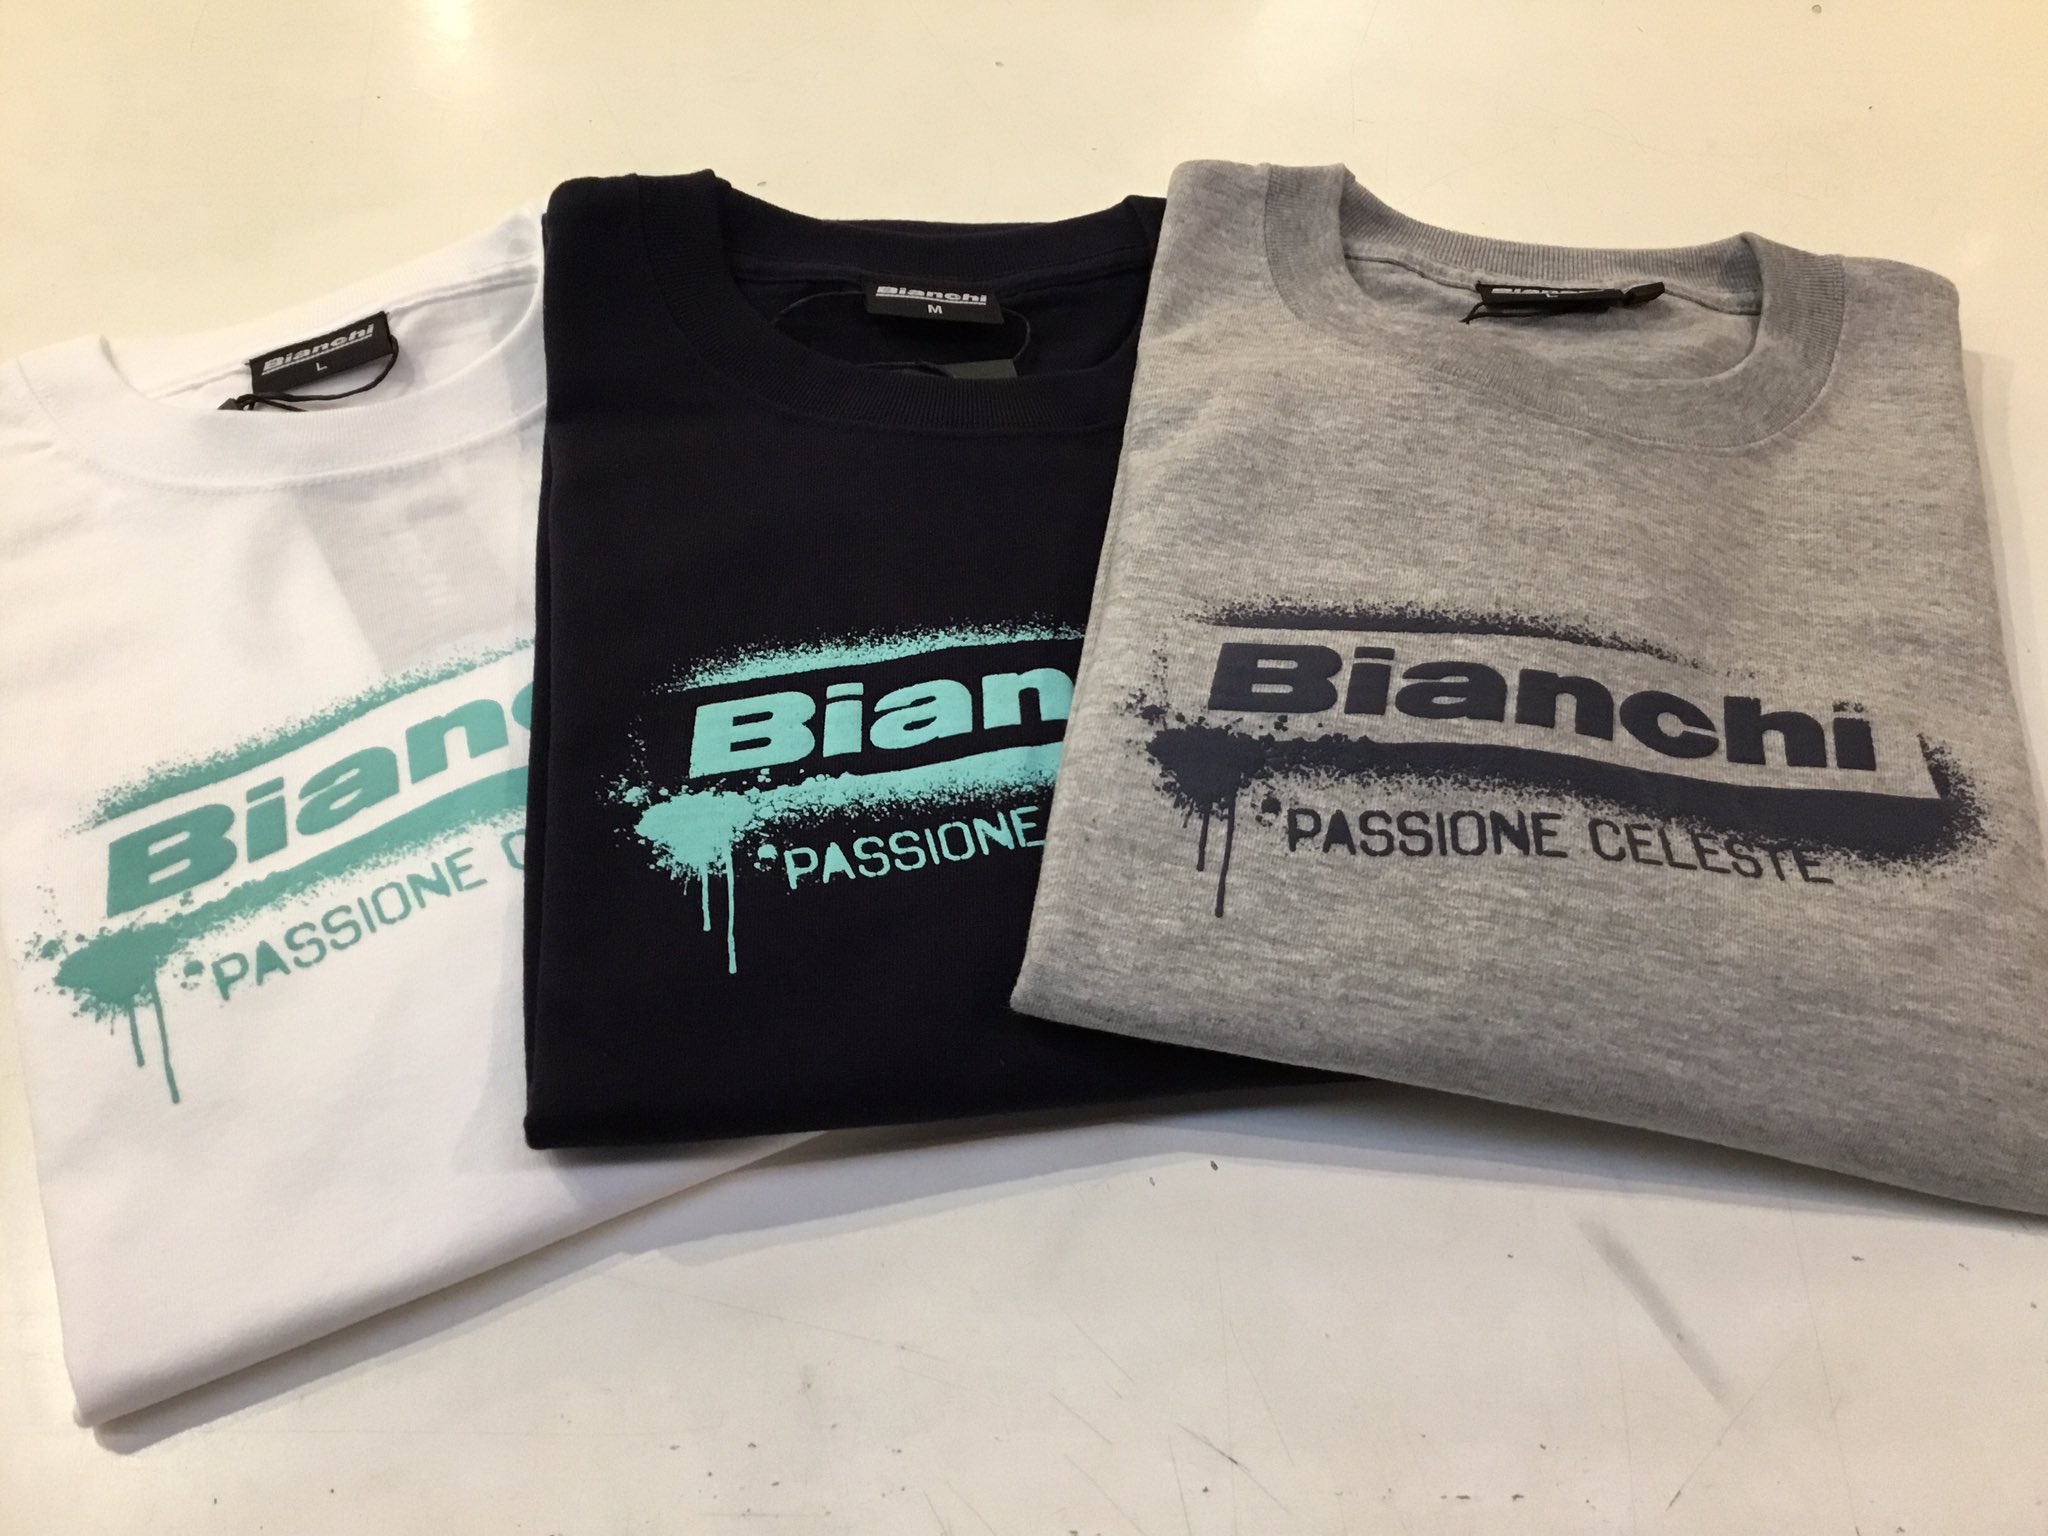 Bianchi Bike Store Marunouchi 丸の内 新作の長袖tシャツ入荷しました ビアンキ長袖tシャツ Color ホワイト ネイビー グレー Price 5 7 胸元にbianchi ロゴとpassione Celeste とってもシンプルで使いやすい１枚となってます ビアンキ